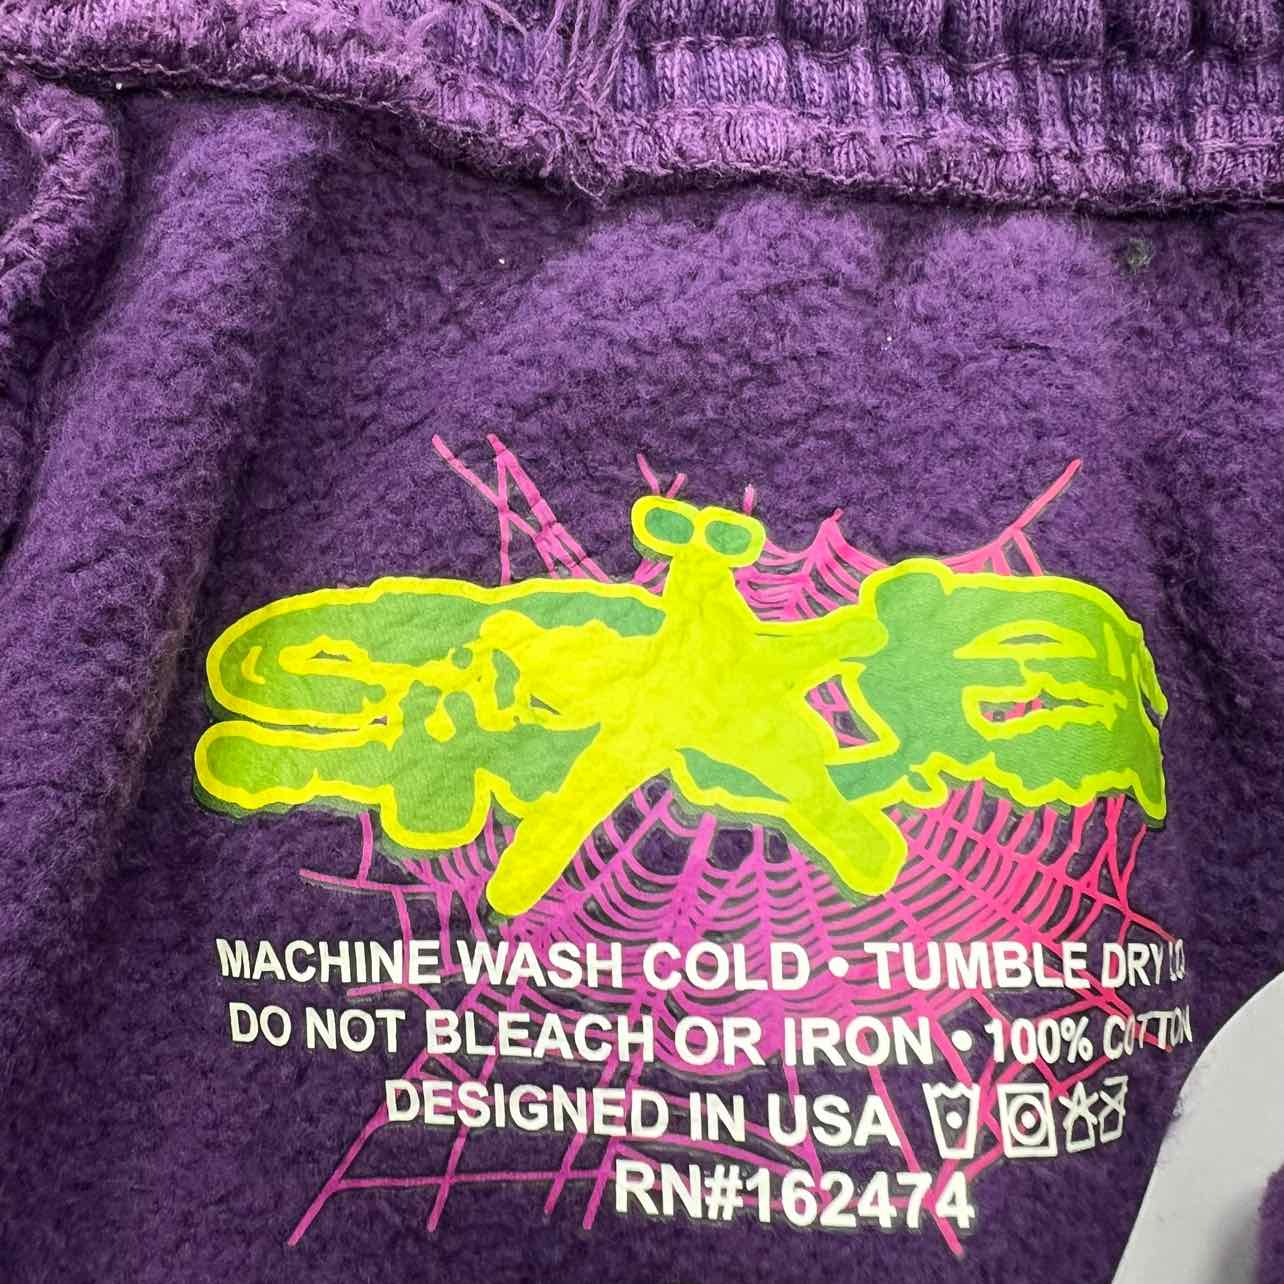 Sp5der Sweatpants &quot;RHINESTONE&quot; Purple New Size L